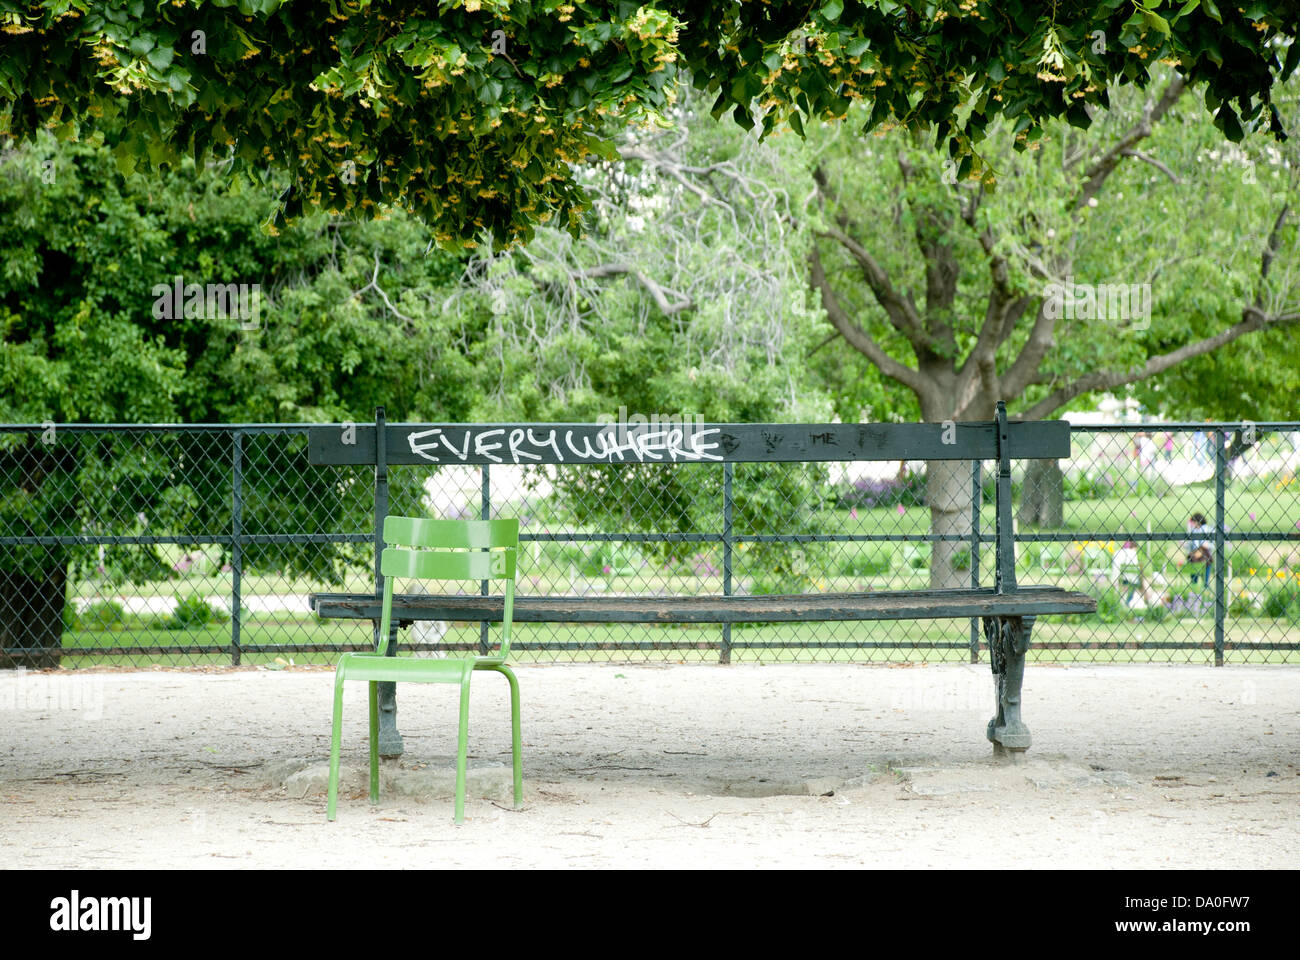 Una panca in legno a Parigi con i graffiti "ovunque" scritto su di esso in vernice bianca. Foto Stock